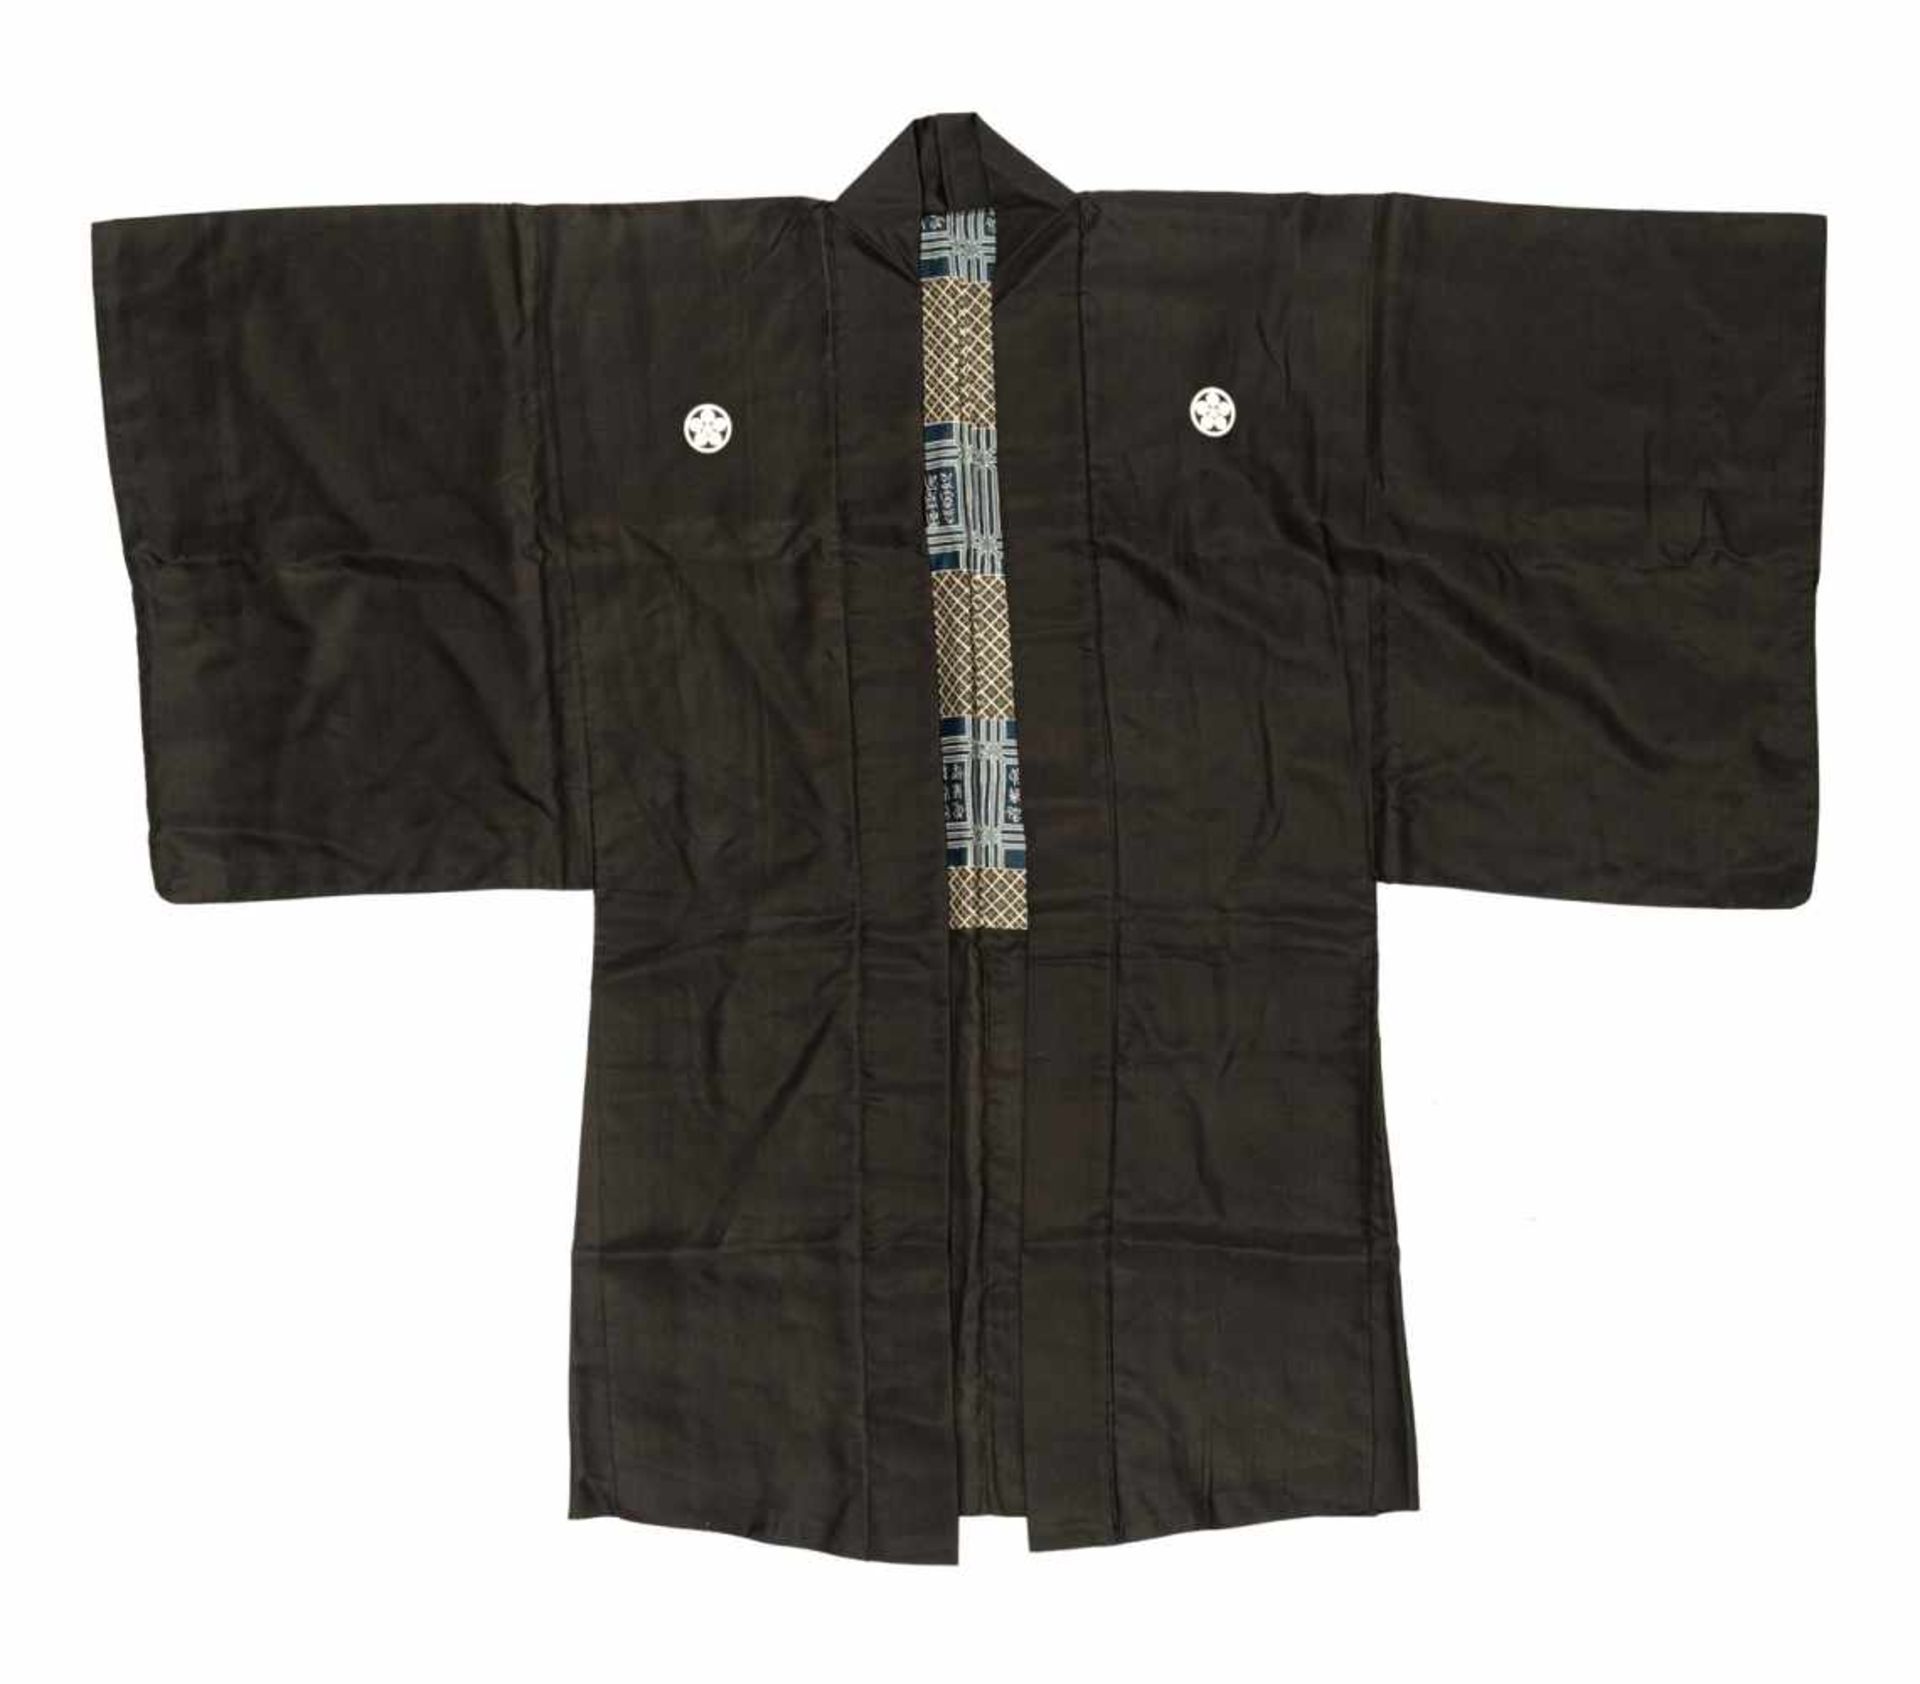 Drei Kimono mit Wappen, Schwerthülle, Hose teils in Seidenbrokat und Seide gearbeitet - Bild 2 aus 16